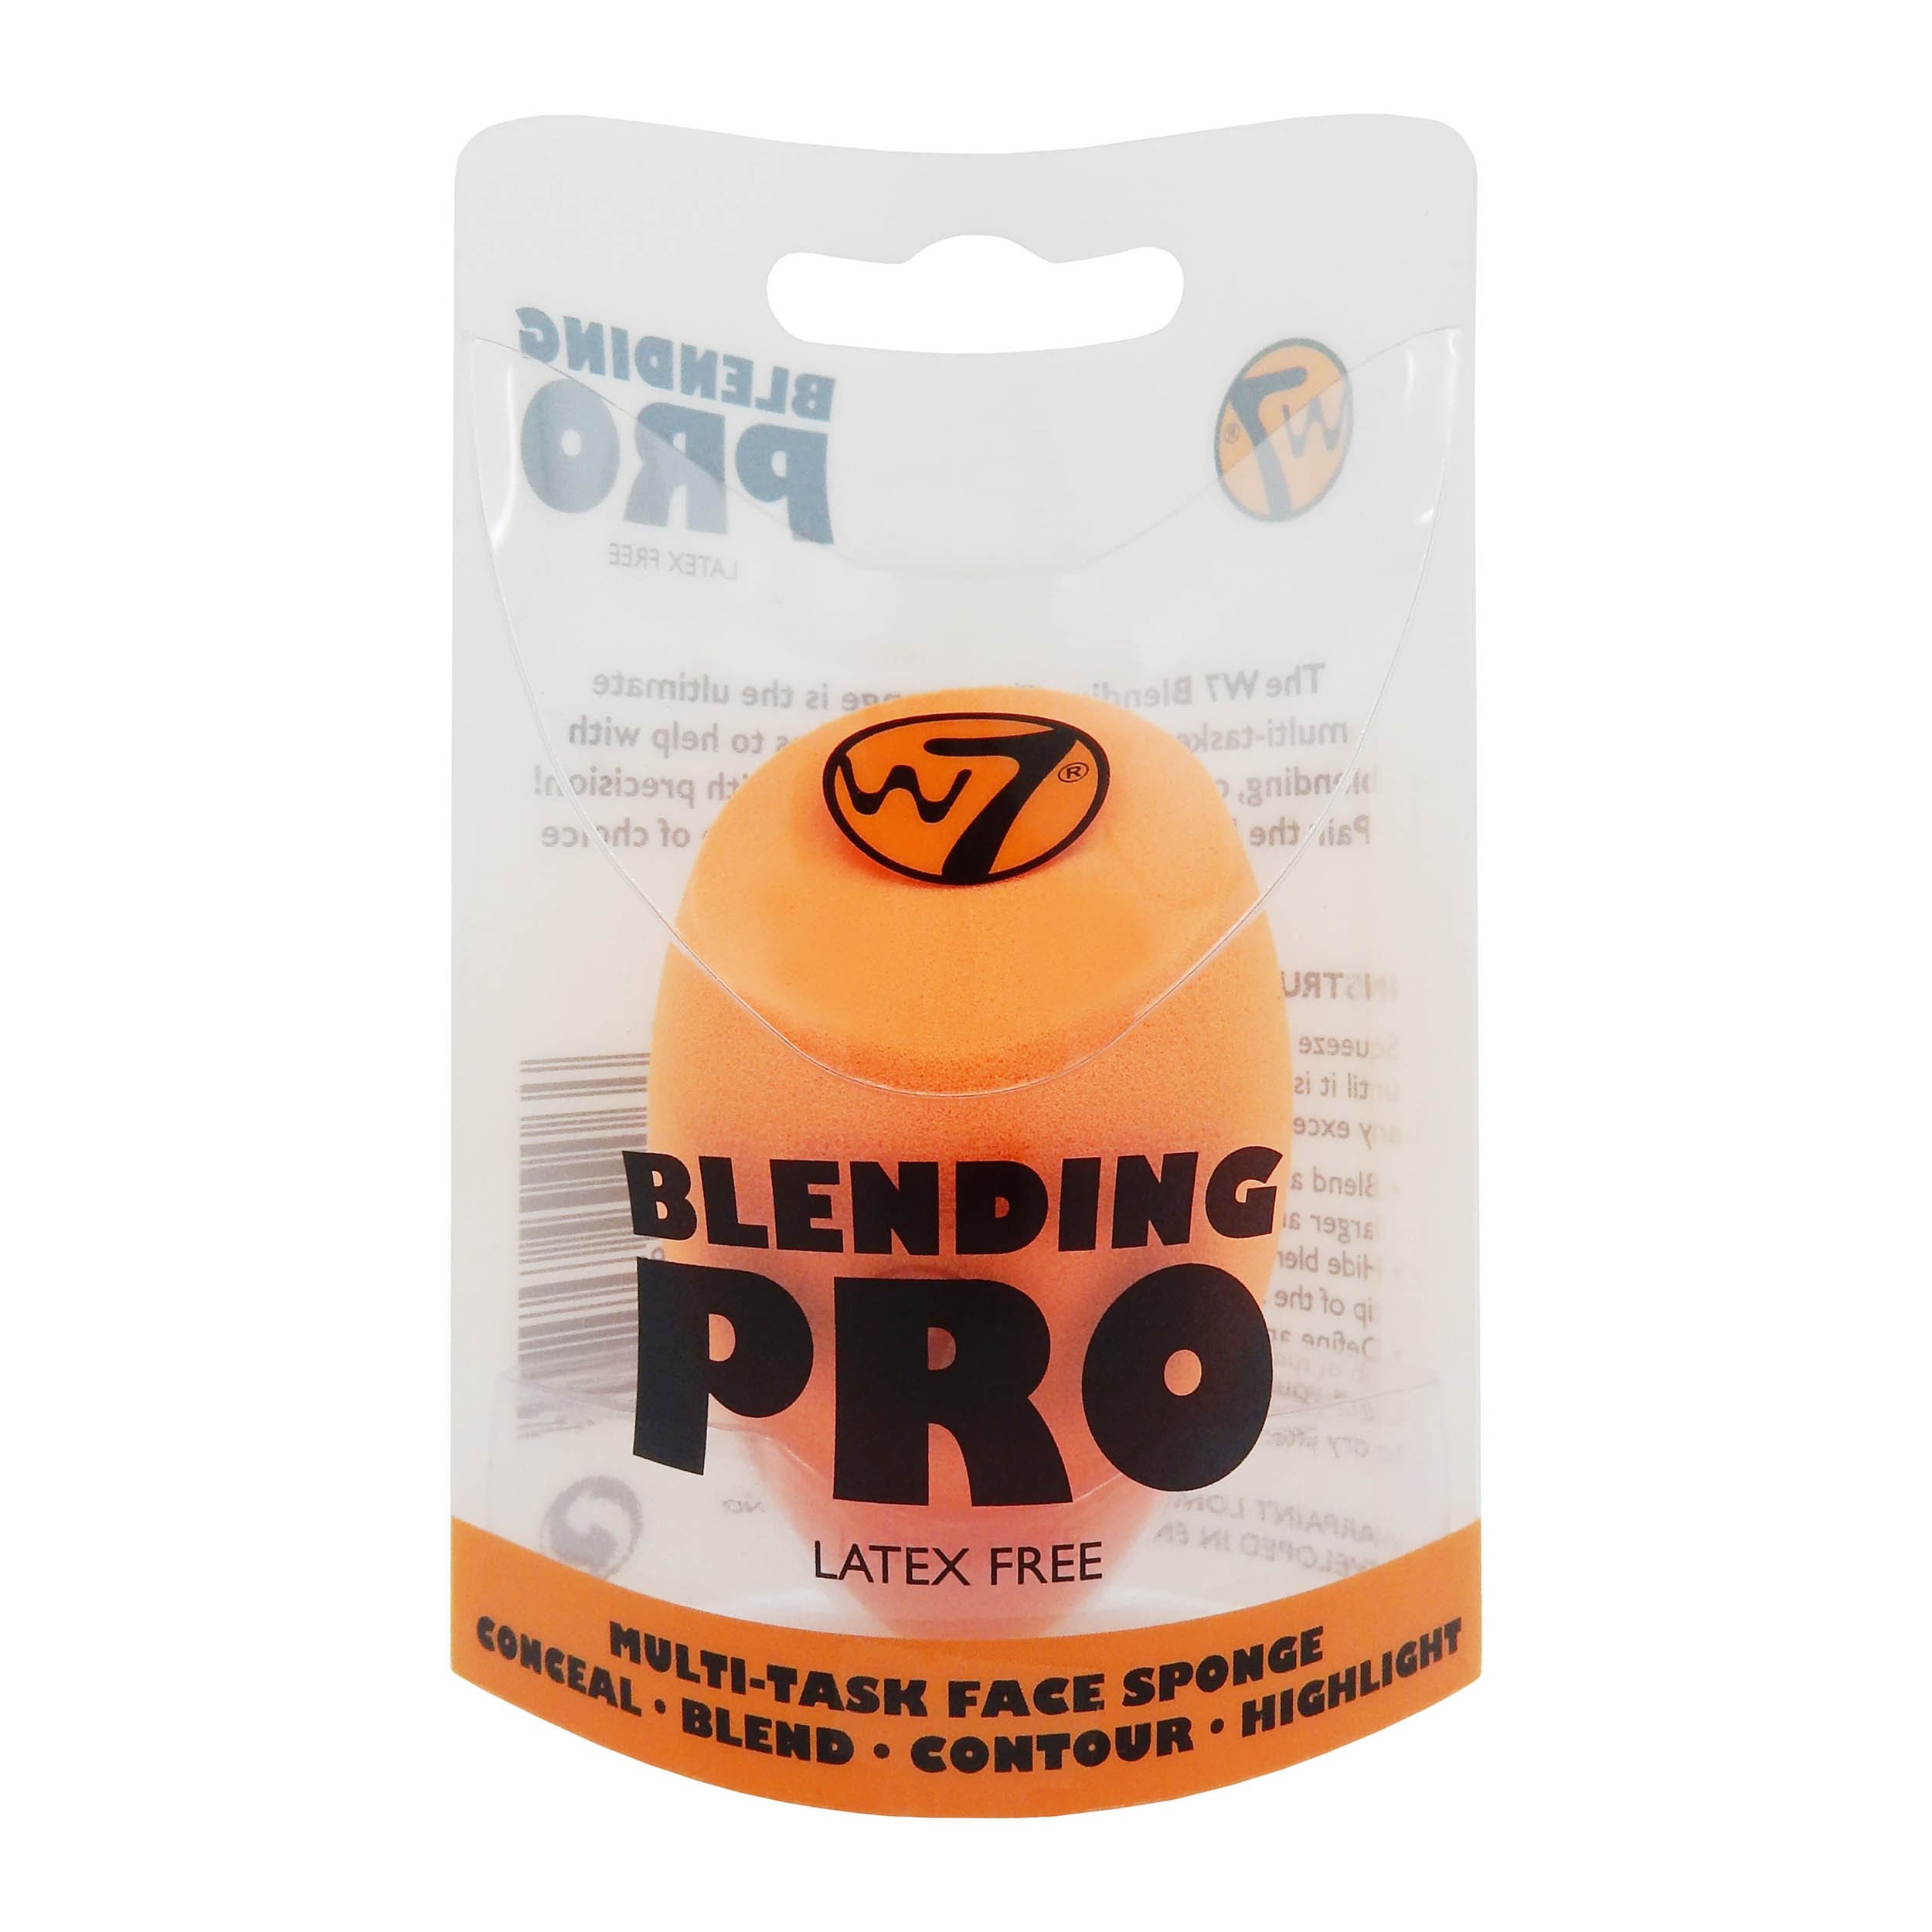 Blending Pro Multi-Tasking Makeup Sponge